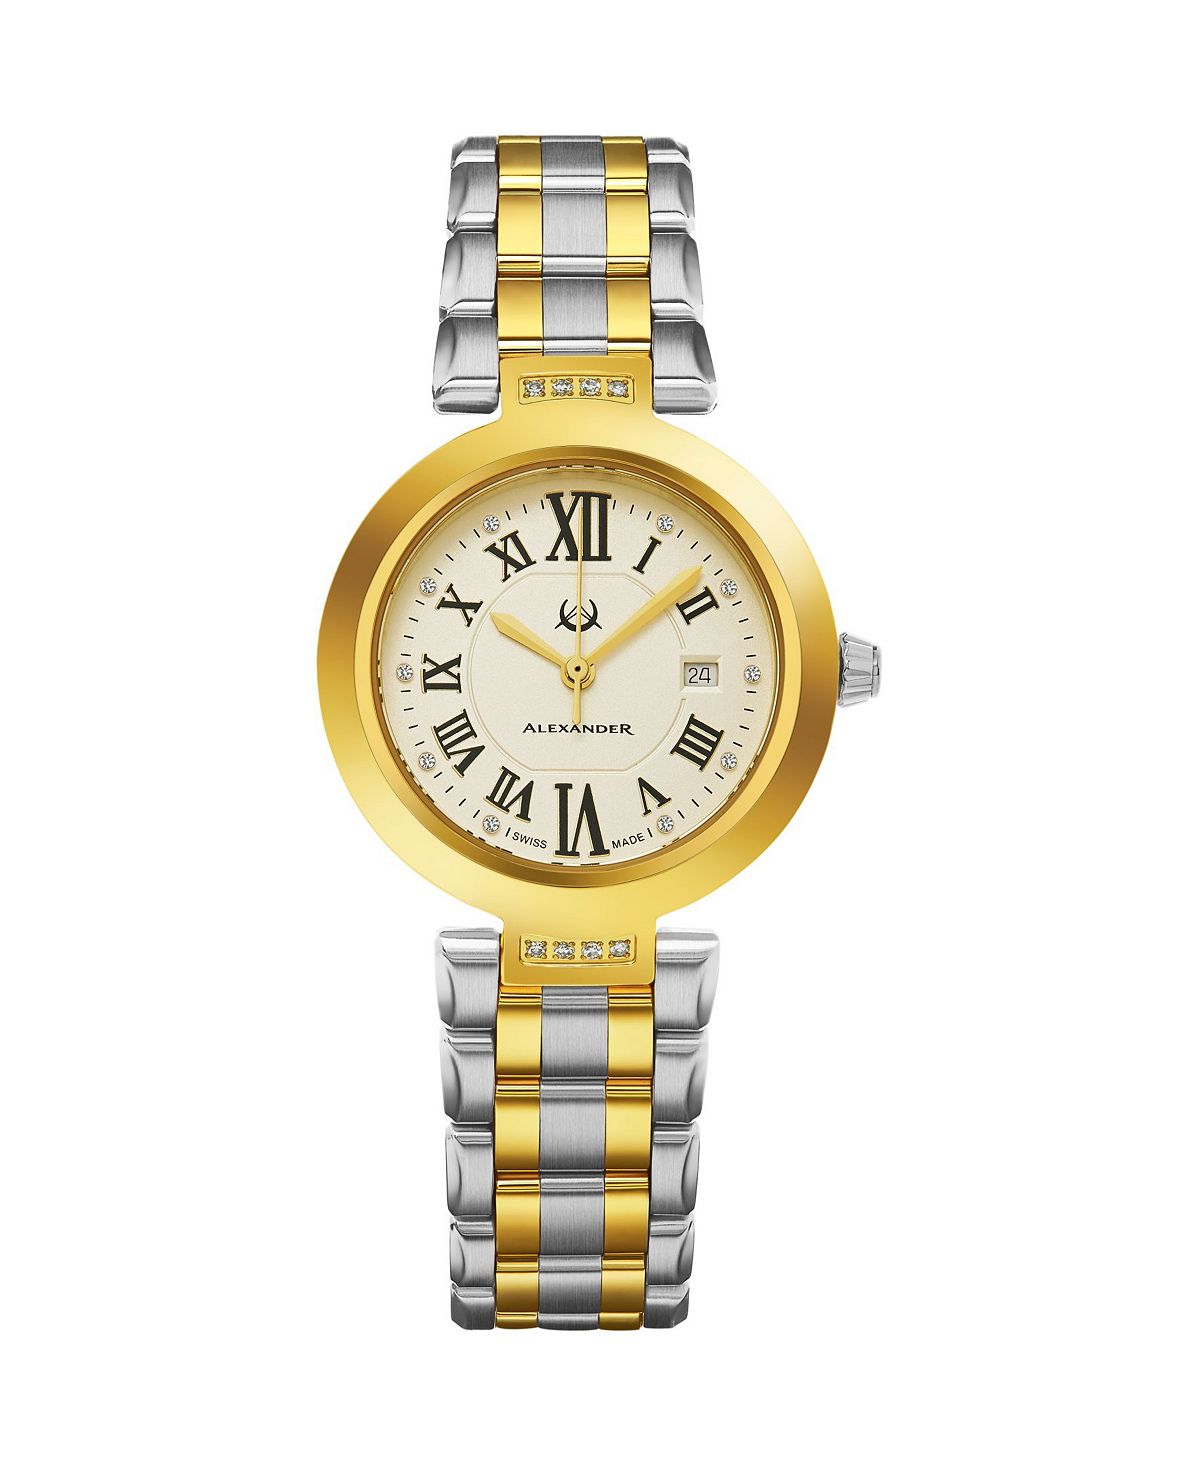 Часы Alexander AD203B-02, женские кварцевые часы с датой, корпус из нержавеющей стали цвета желтого золота и браслет из нержавеющей стали цвета желтого золота Stuhrling